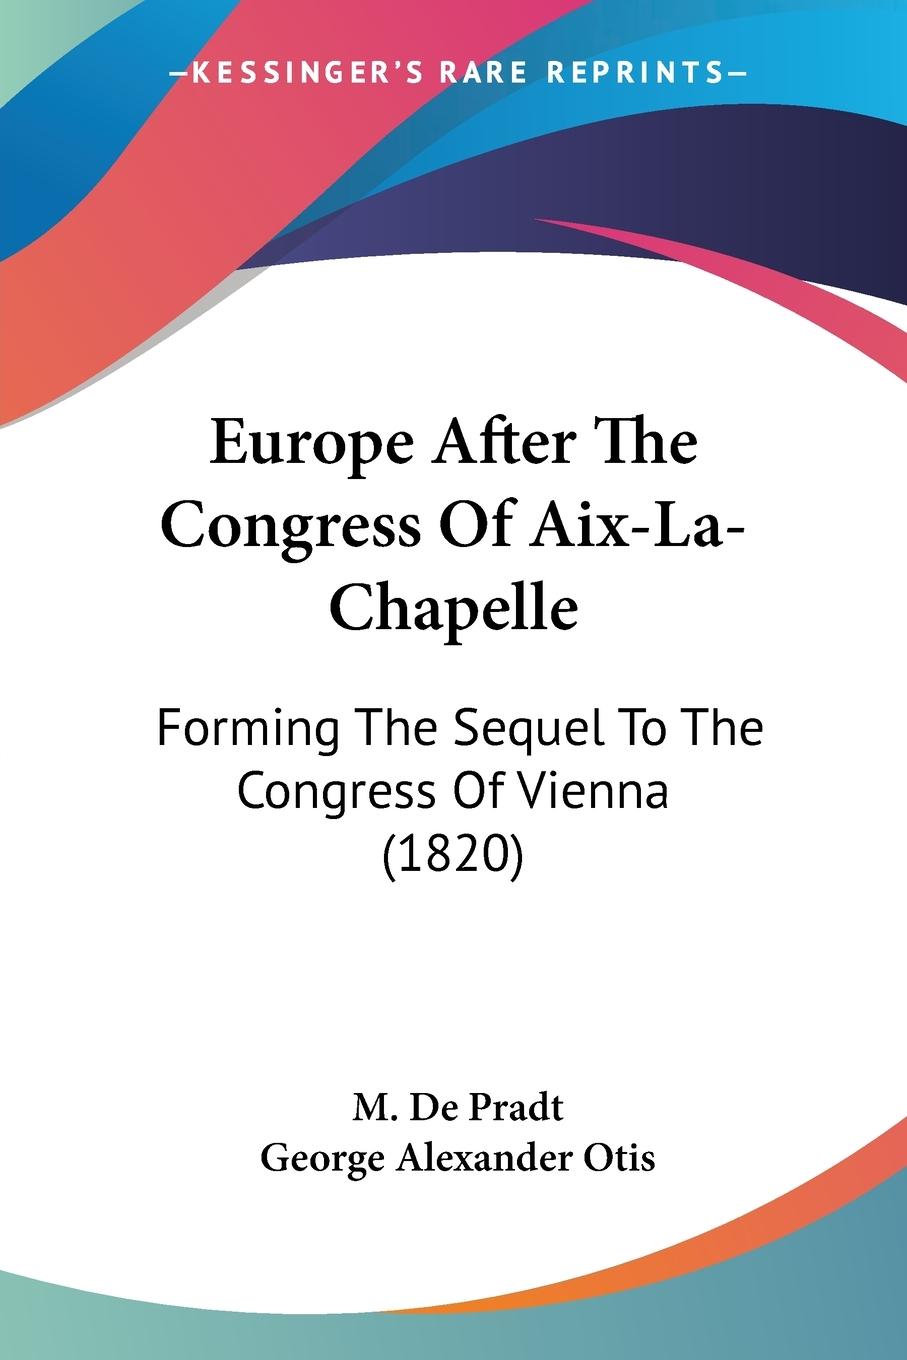 Europe After The Congress Of Aix-La-Chapelle - Pradt, M. De